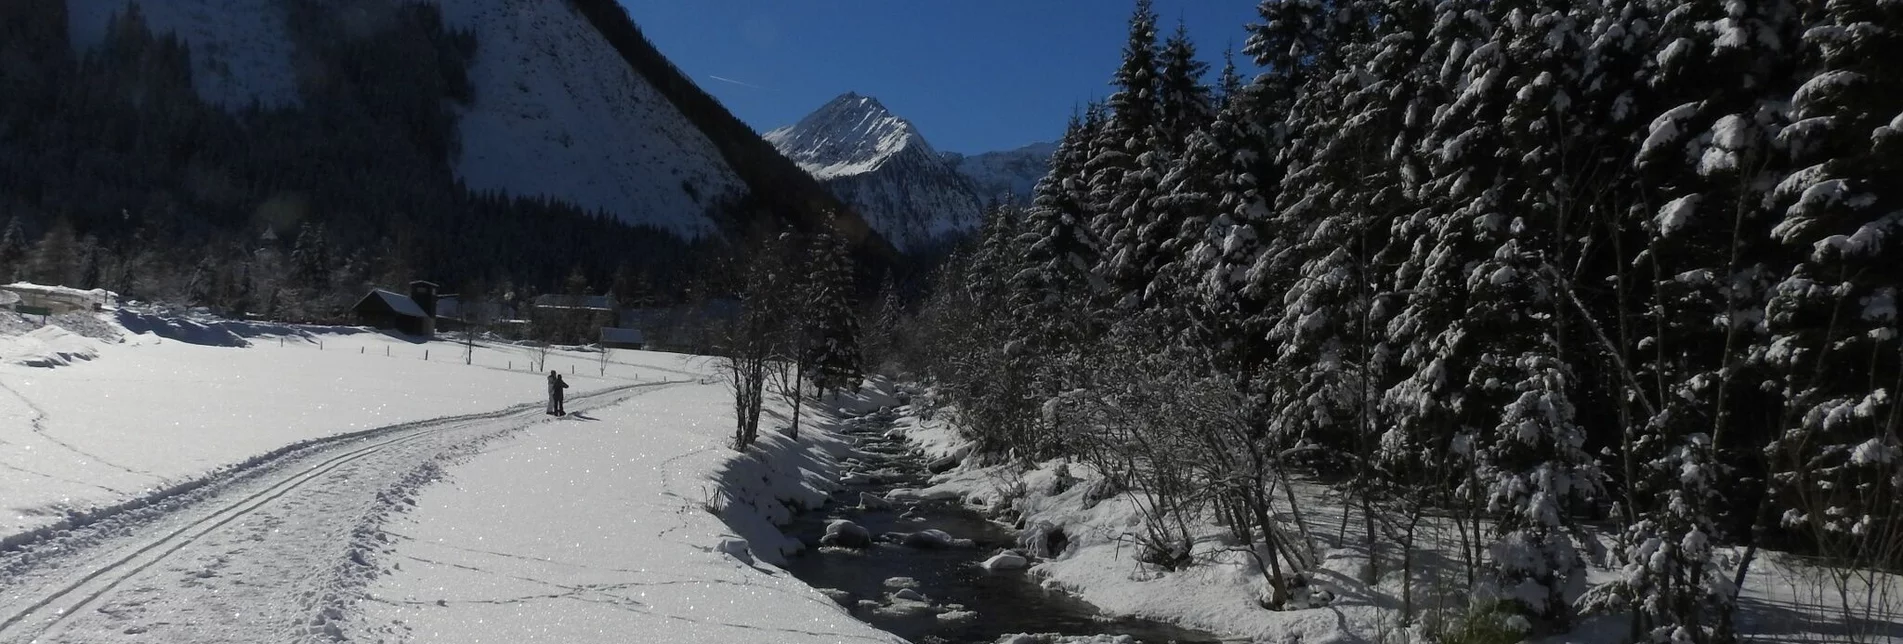 Winterwandern Winterwanderung von Mößna - St. Nikolai - Touren-Impression #1 | © Erlebnisregion Schladming-Dachstein